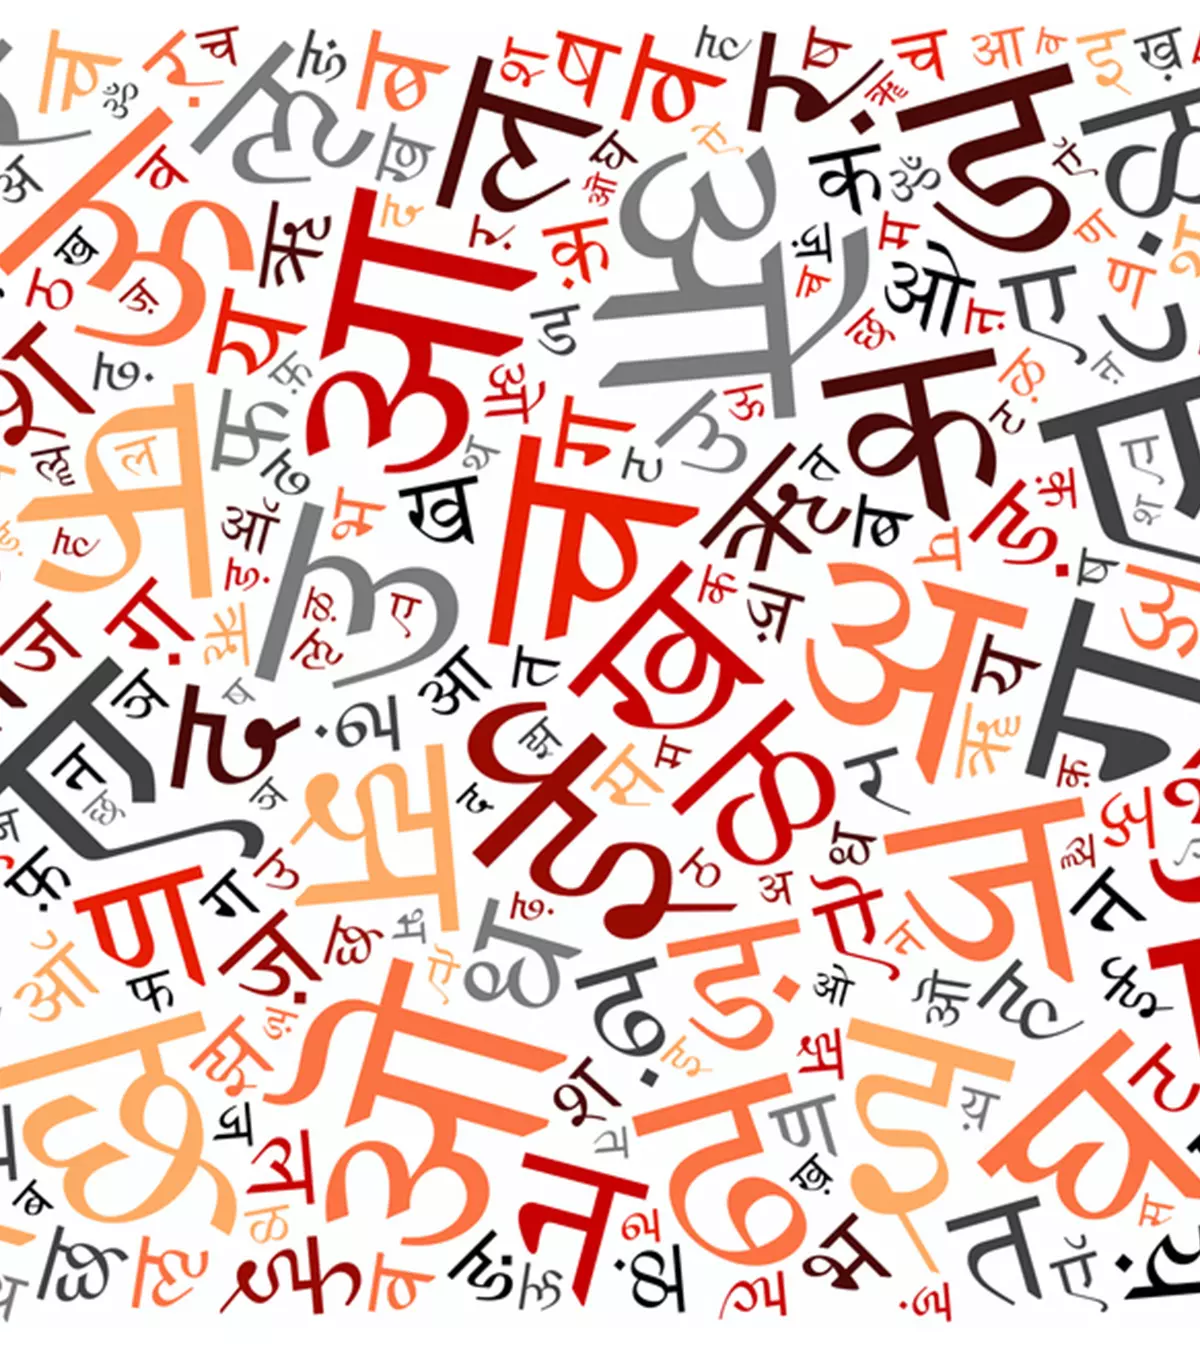 मुश्किल नहीं है बच्चों को हिंदी बोलना और लिखना सीखाना